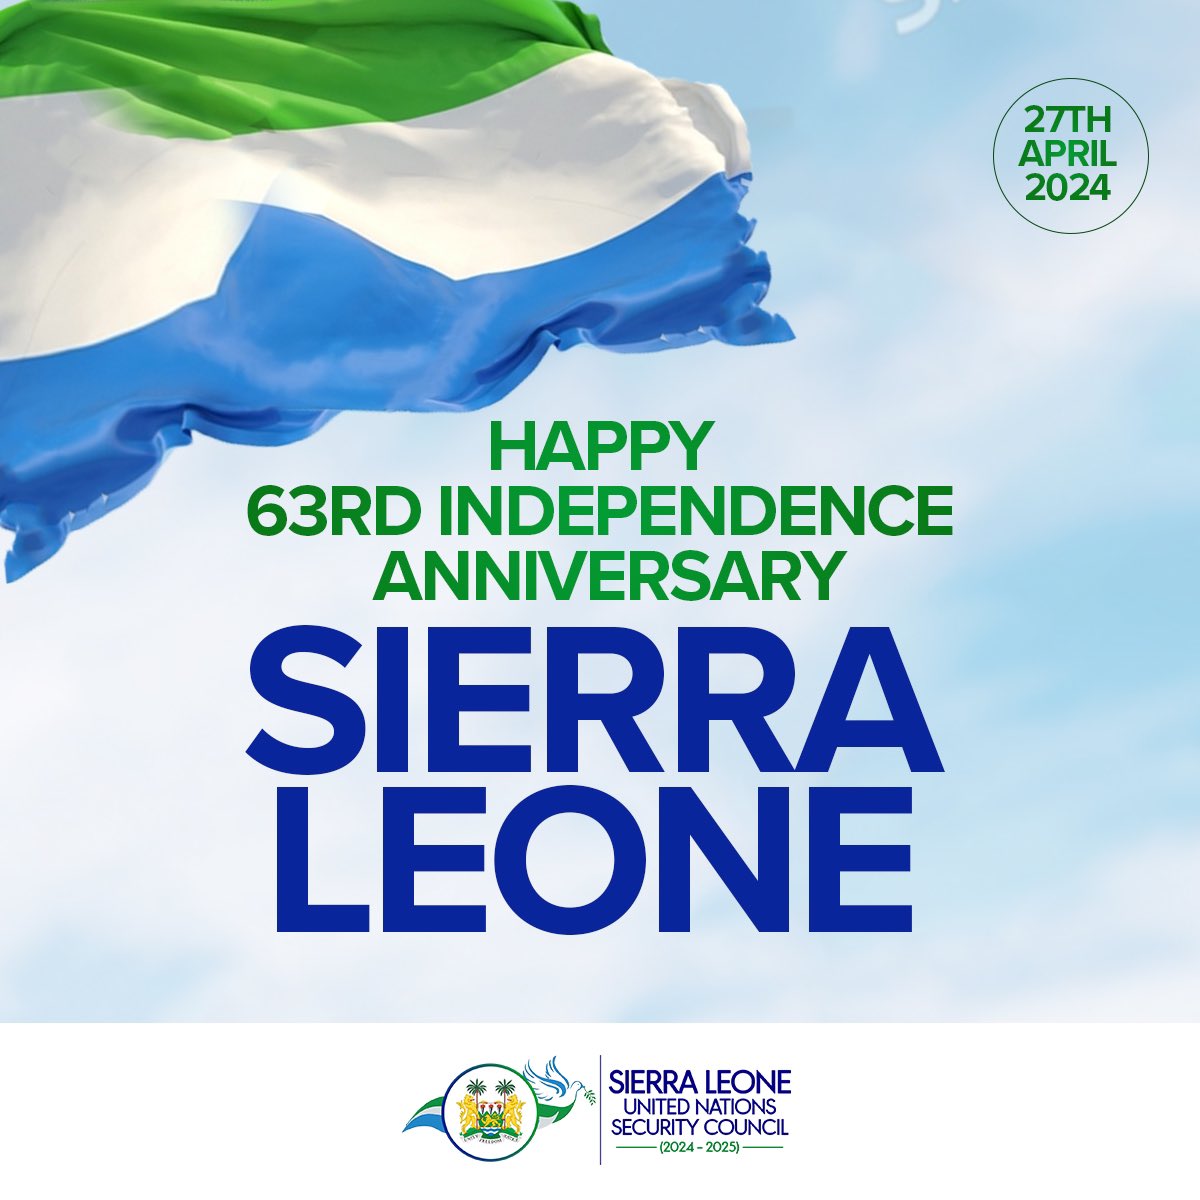 SierraLeone@UN (@SierraLeoneUN) on Twitter photo 2024-04-27 11:32:20